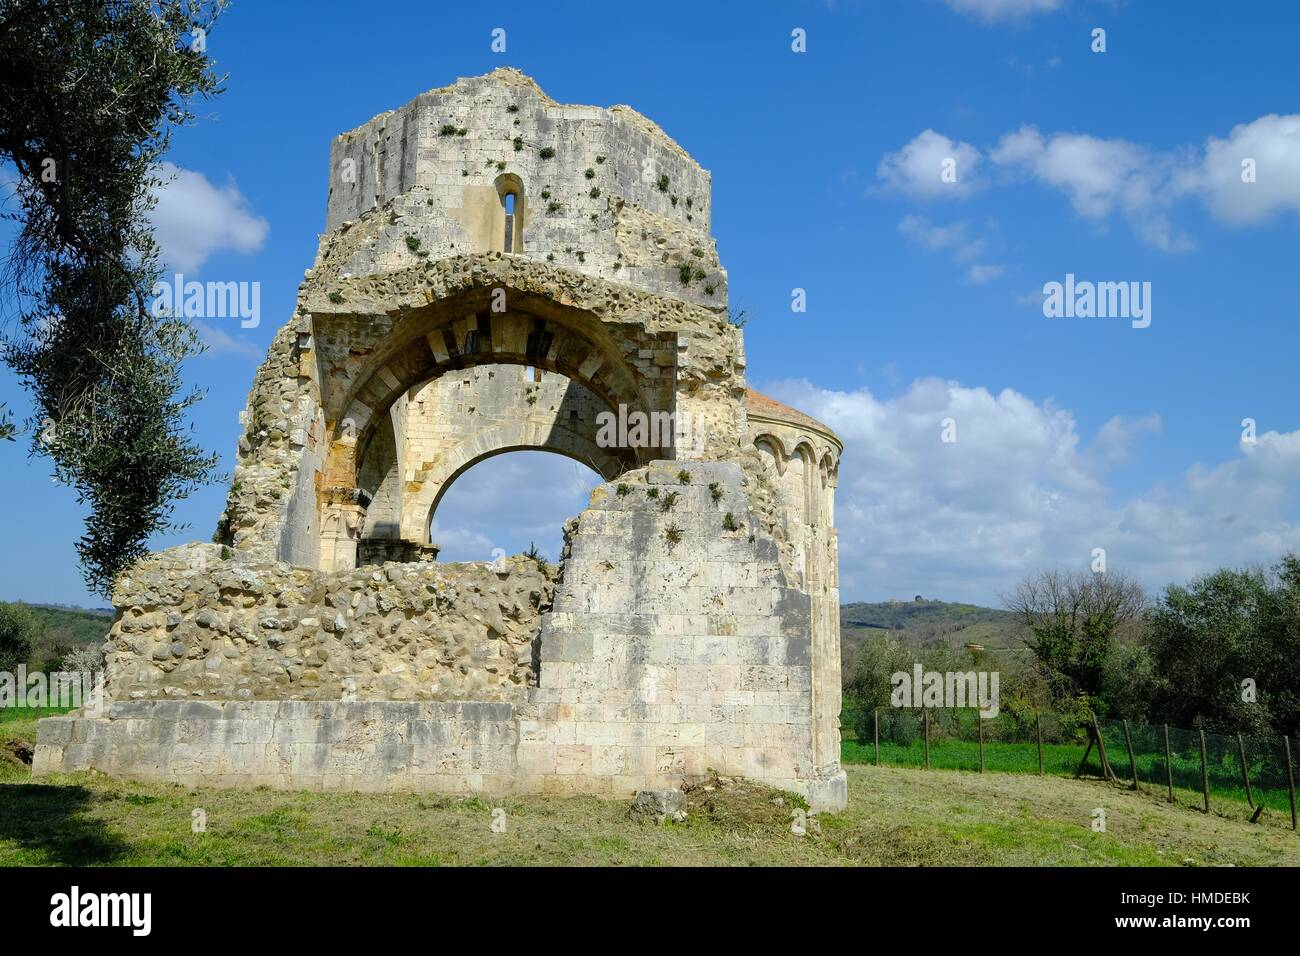 San bruzio monastery immagini e fotografie stock ad alta risoluzione - Alamy